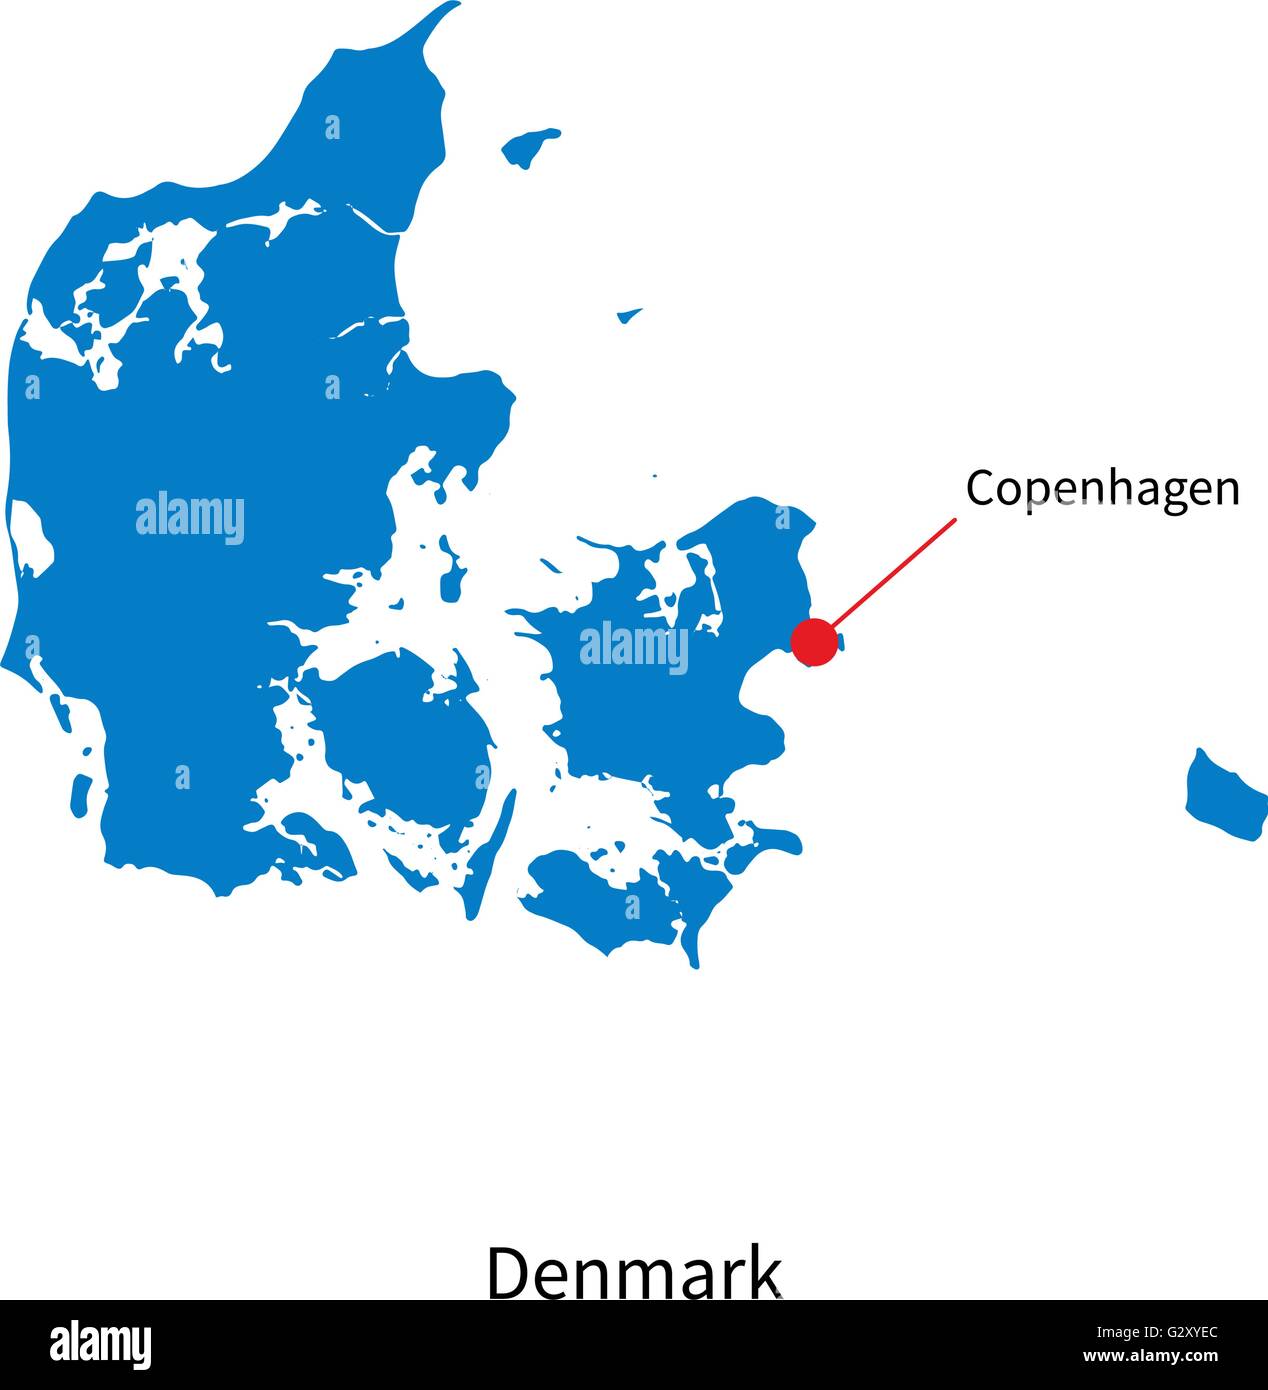 Dettaglio mappa vettoriale della Danimarca e la capitale Copenaghen Illustrazione Vettoriale